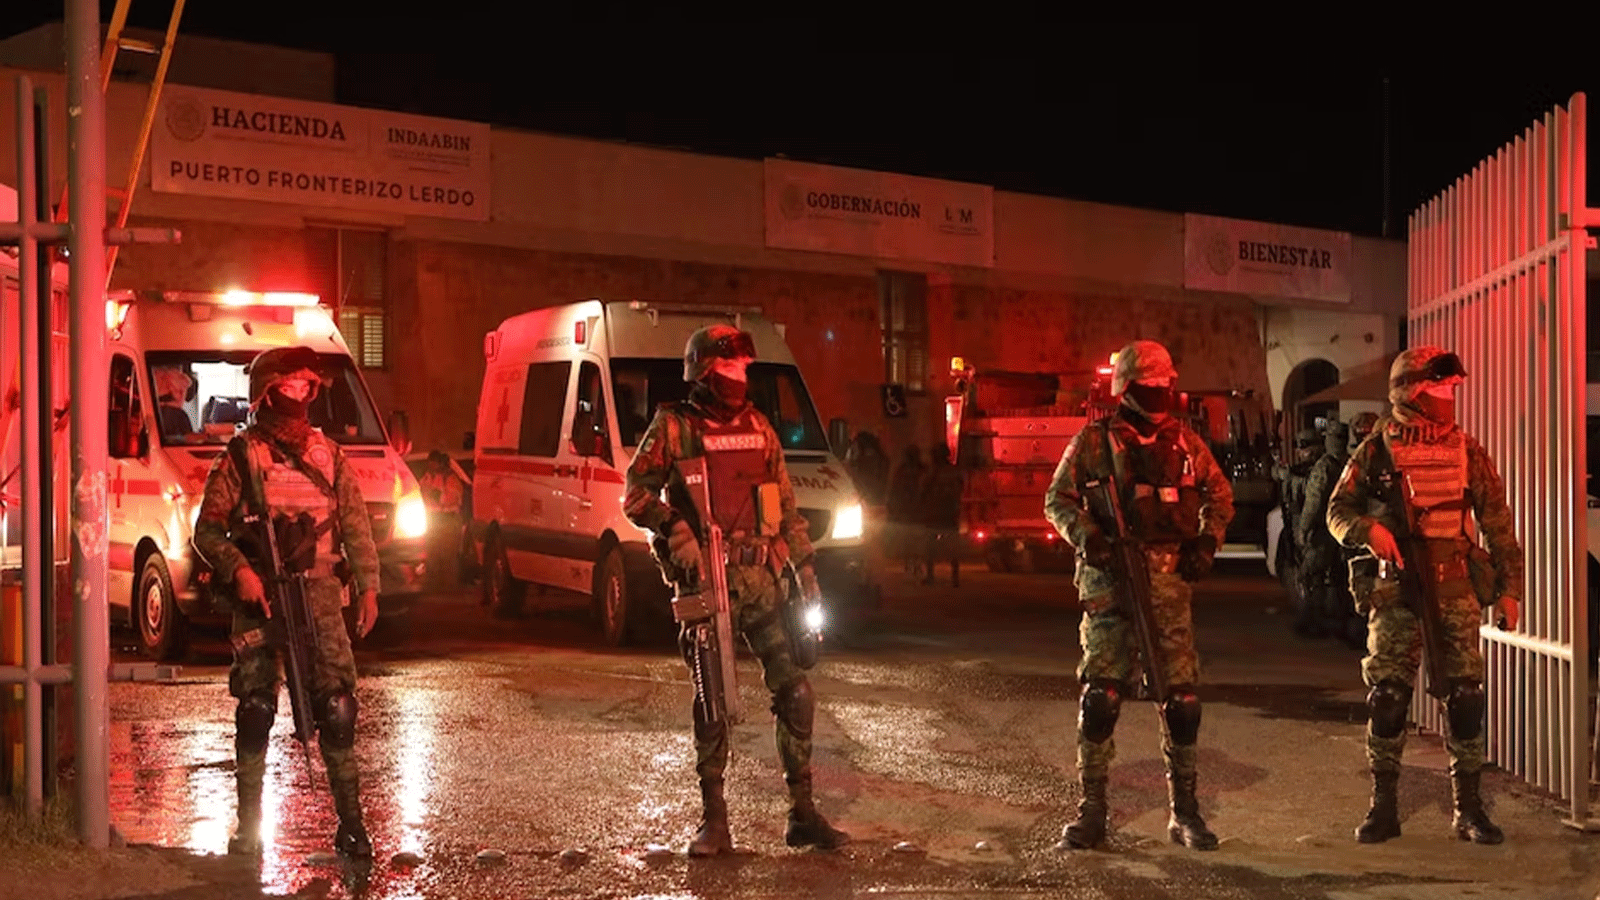 رجال الإطفاء والجنود أمام مركز احتجاز المهاجرين الذي وقع فيه الحريق في مدينة سيوداد خواريز(Ciudad Juárez)، المكسيكية التي يسعى منها العديد من المهاجرين للوصول إلى الولايات المتحدة